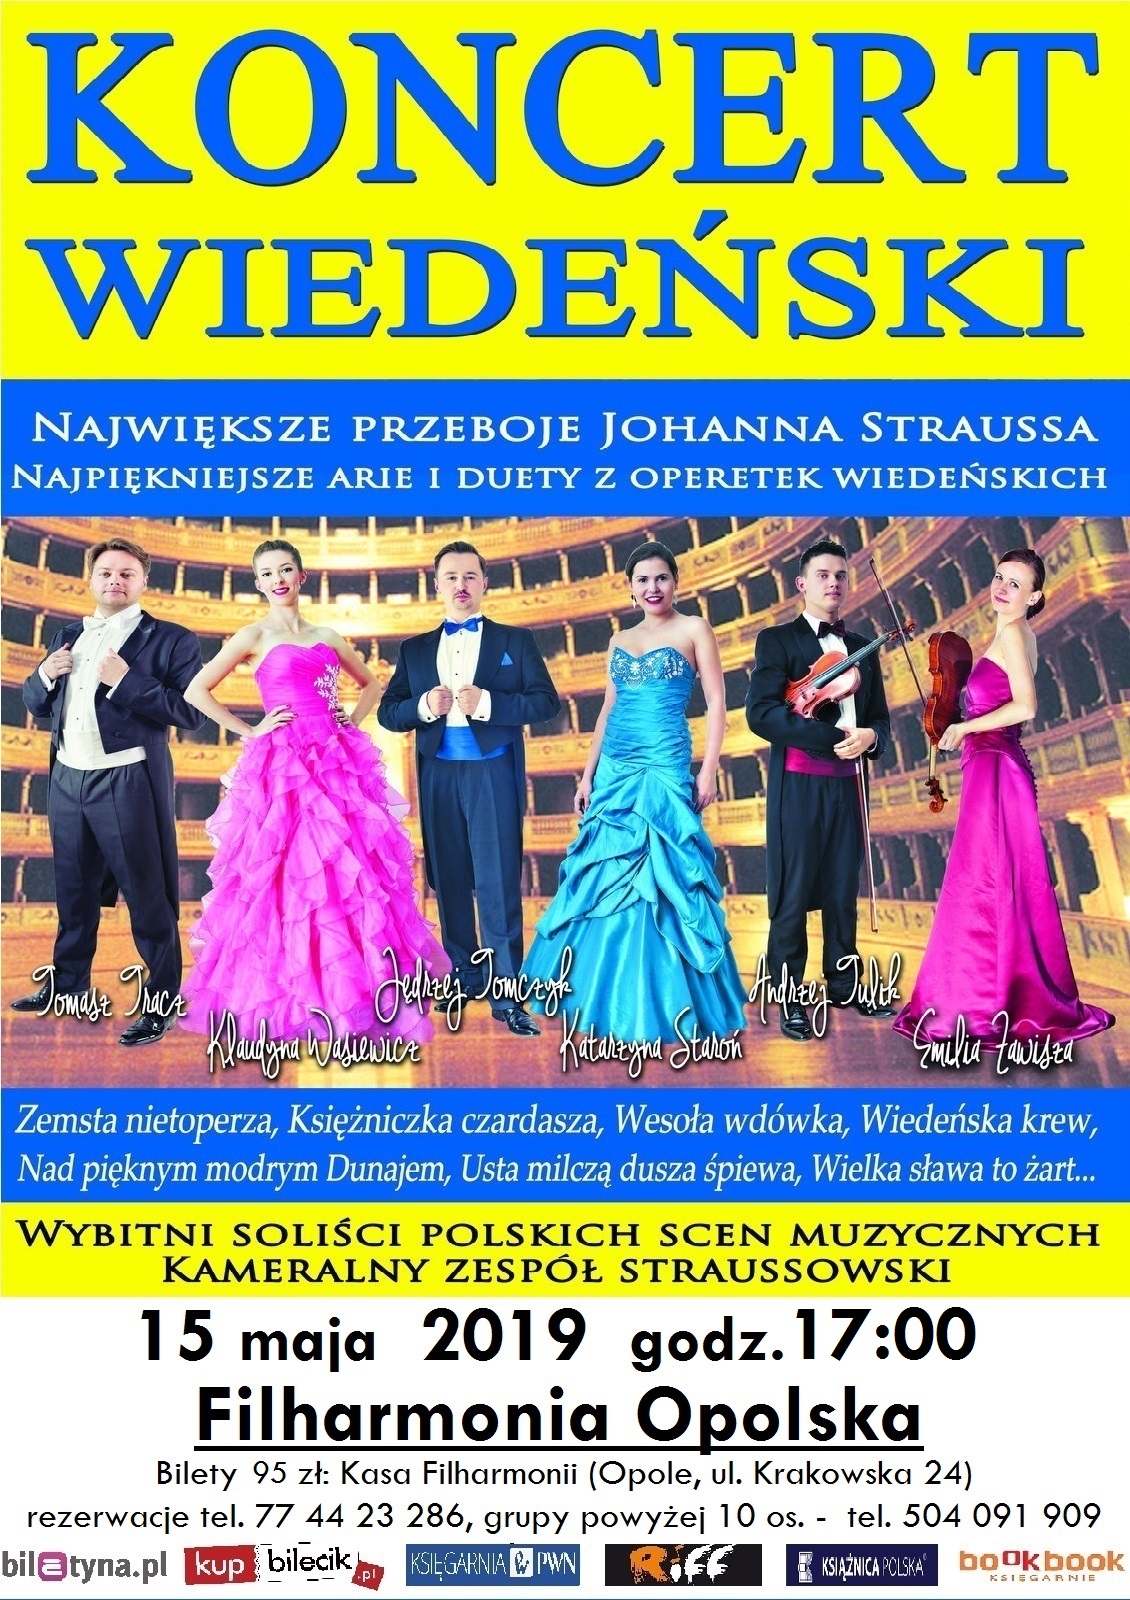 Koncert Wiedeński w Filharmonii Opolskiej